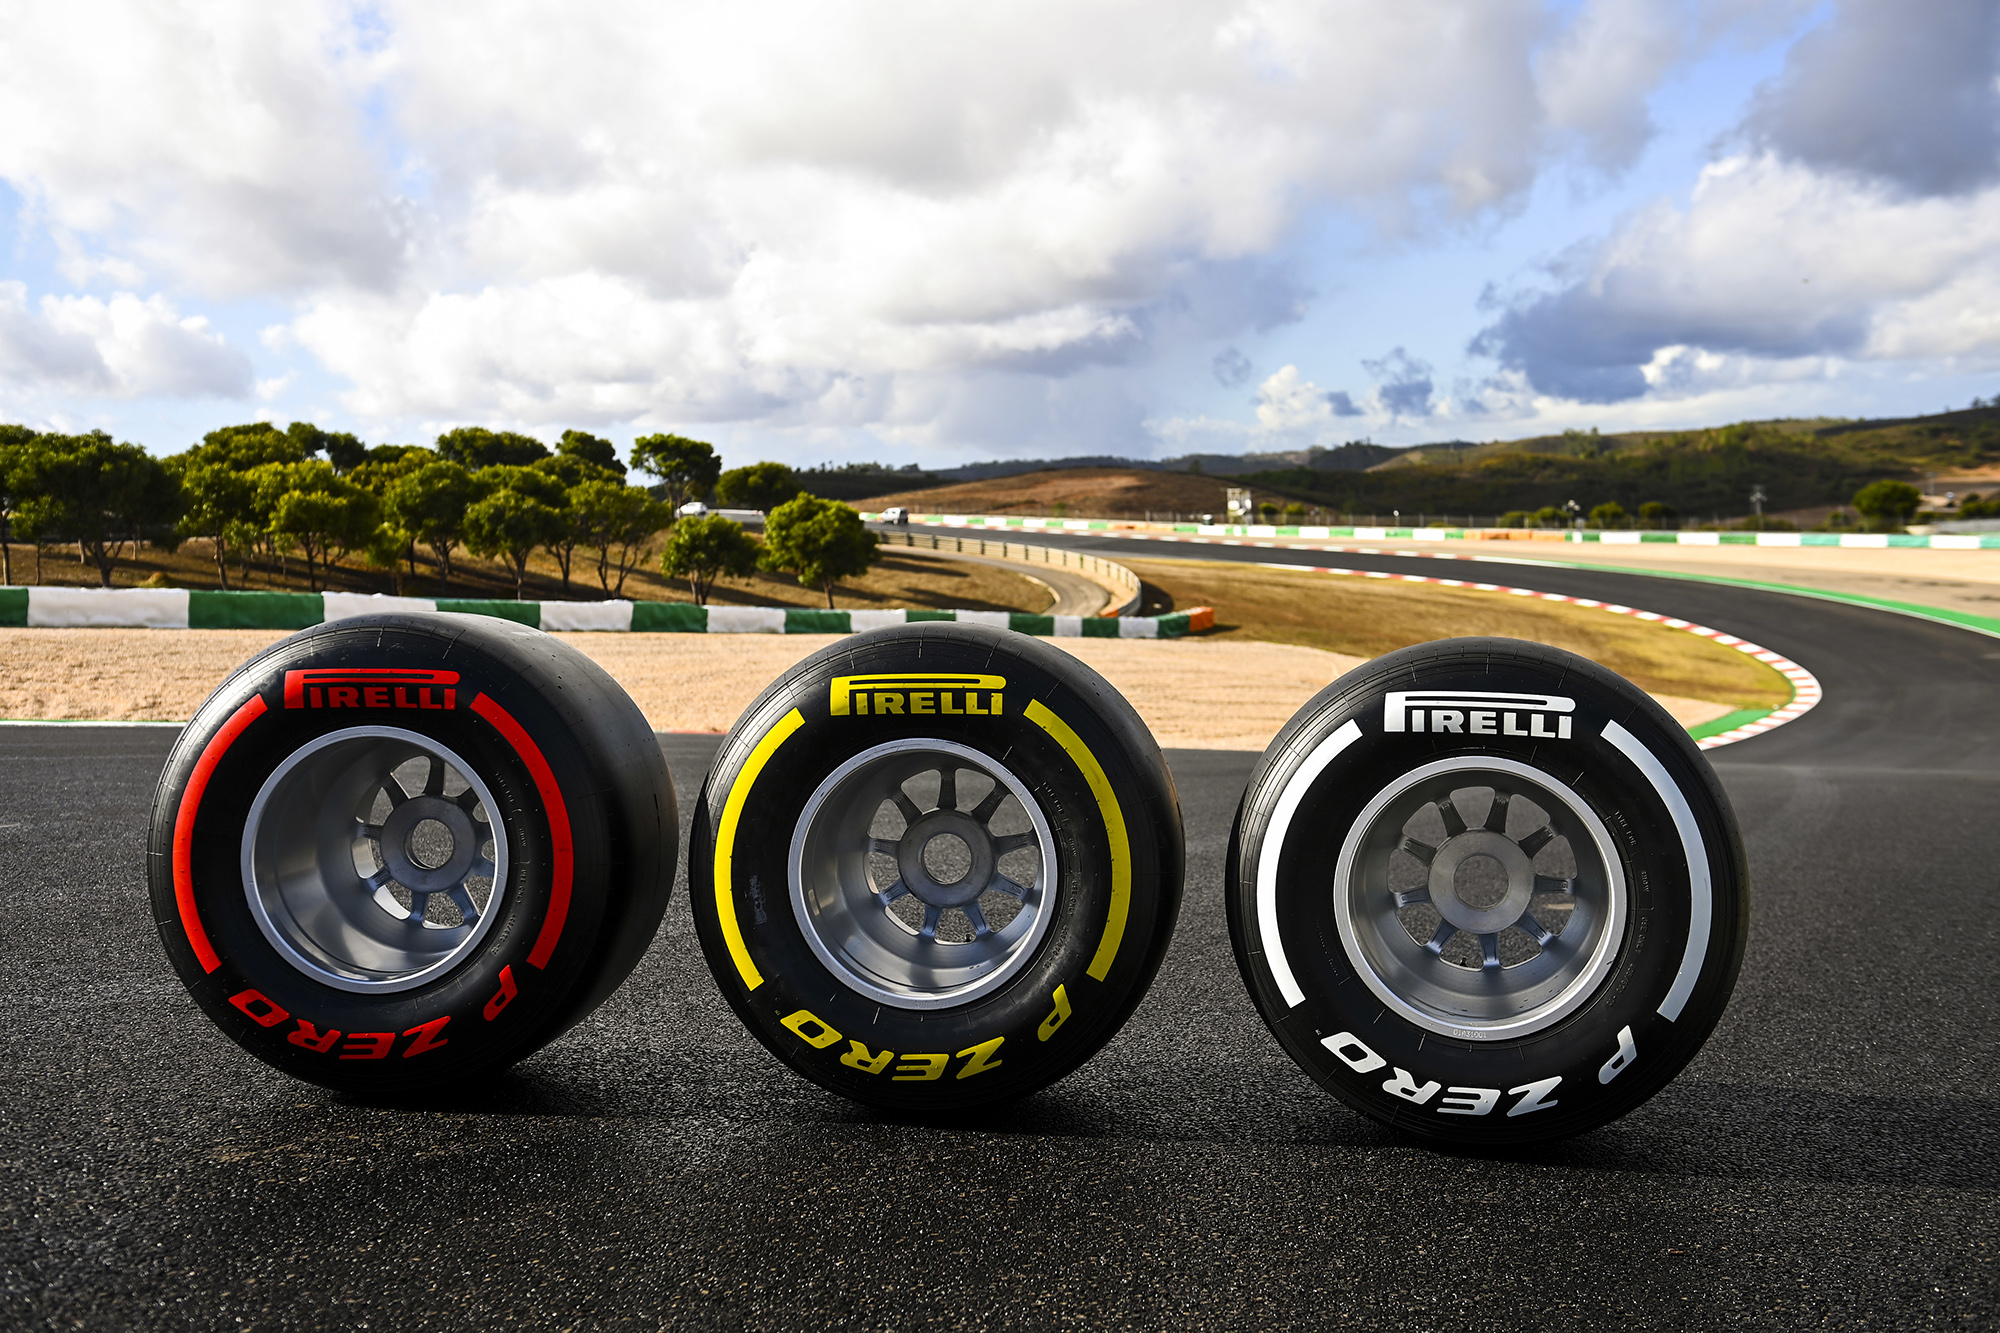 Όλα έτοιμα για το Grand Prix της F1 στην Πορτογαλία